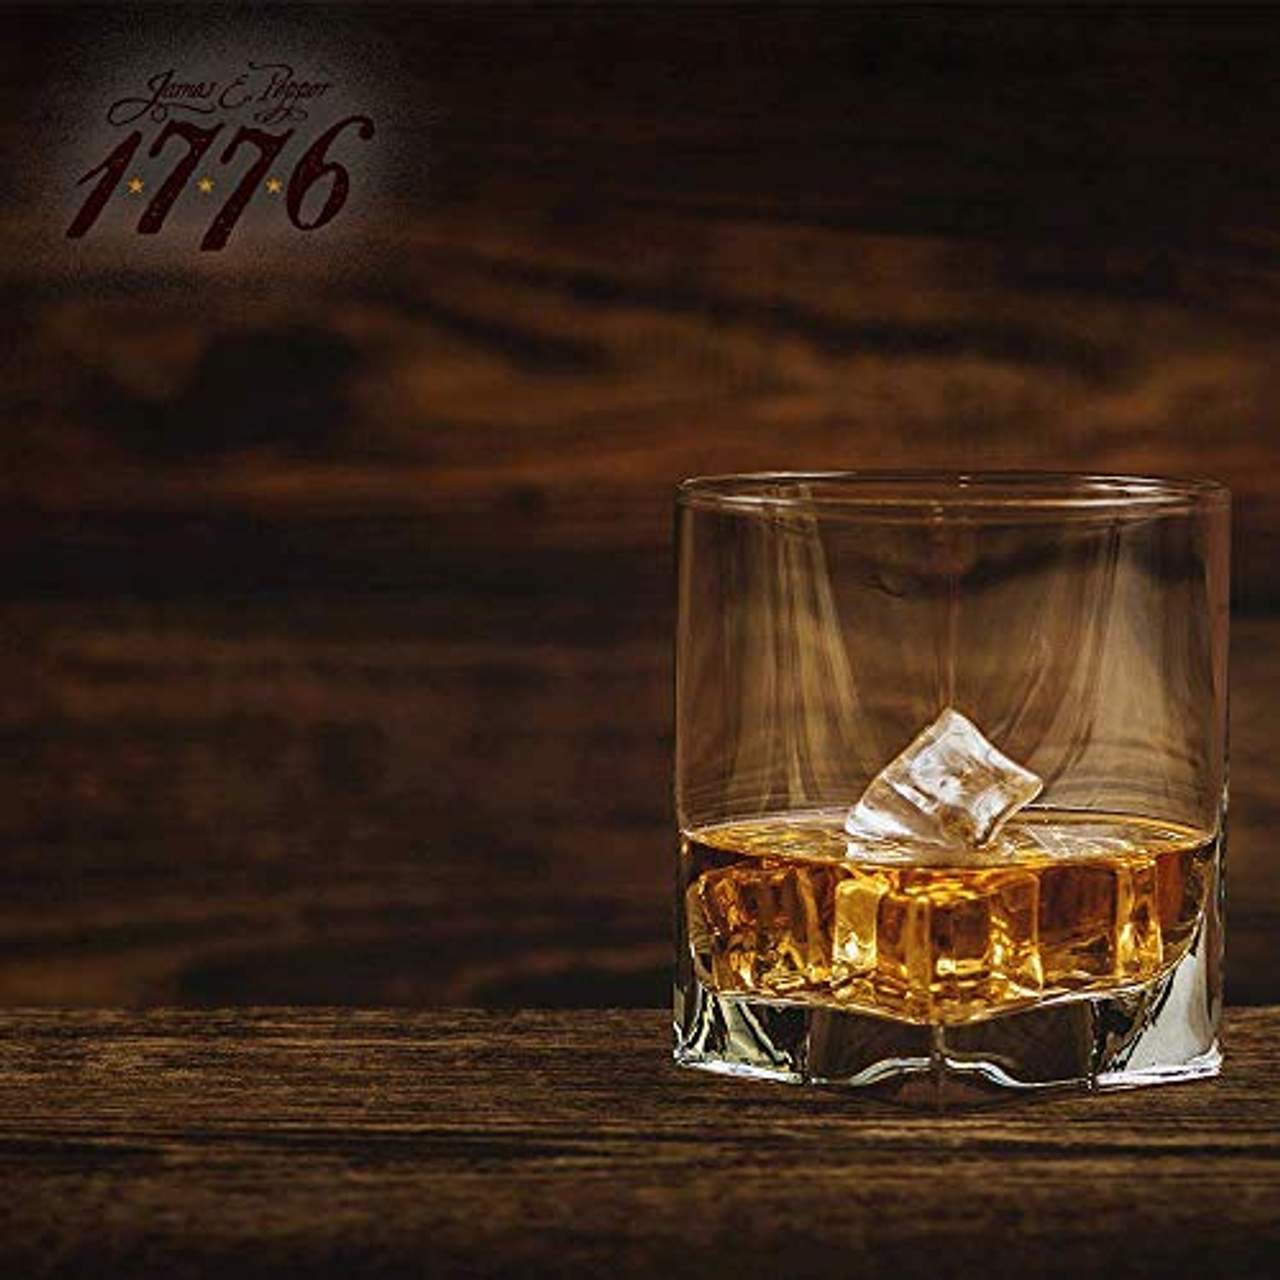 1776 Bourbon Whisky